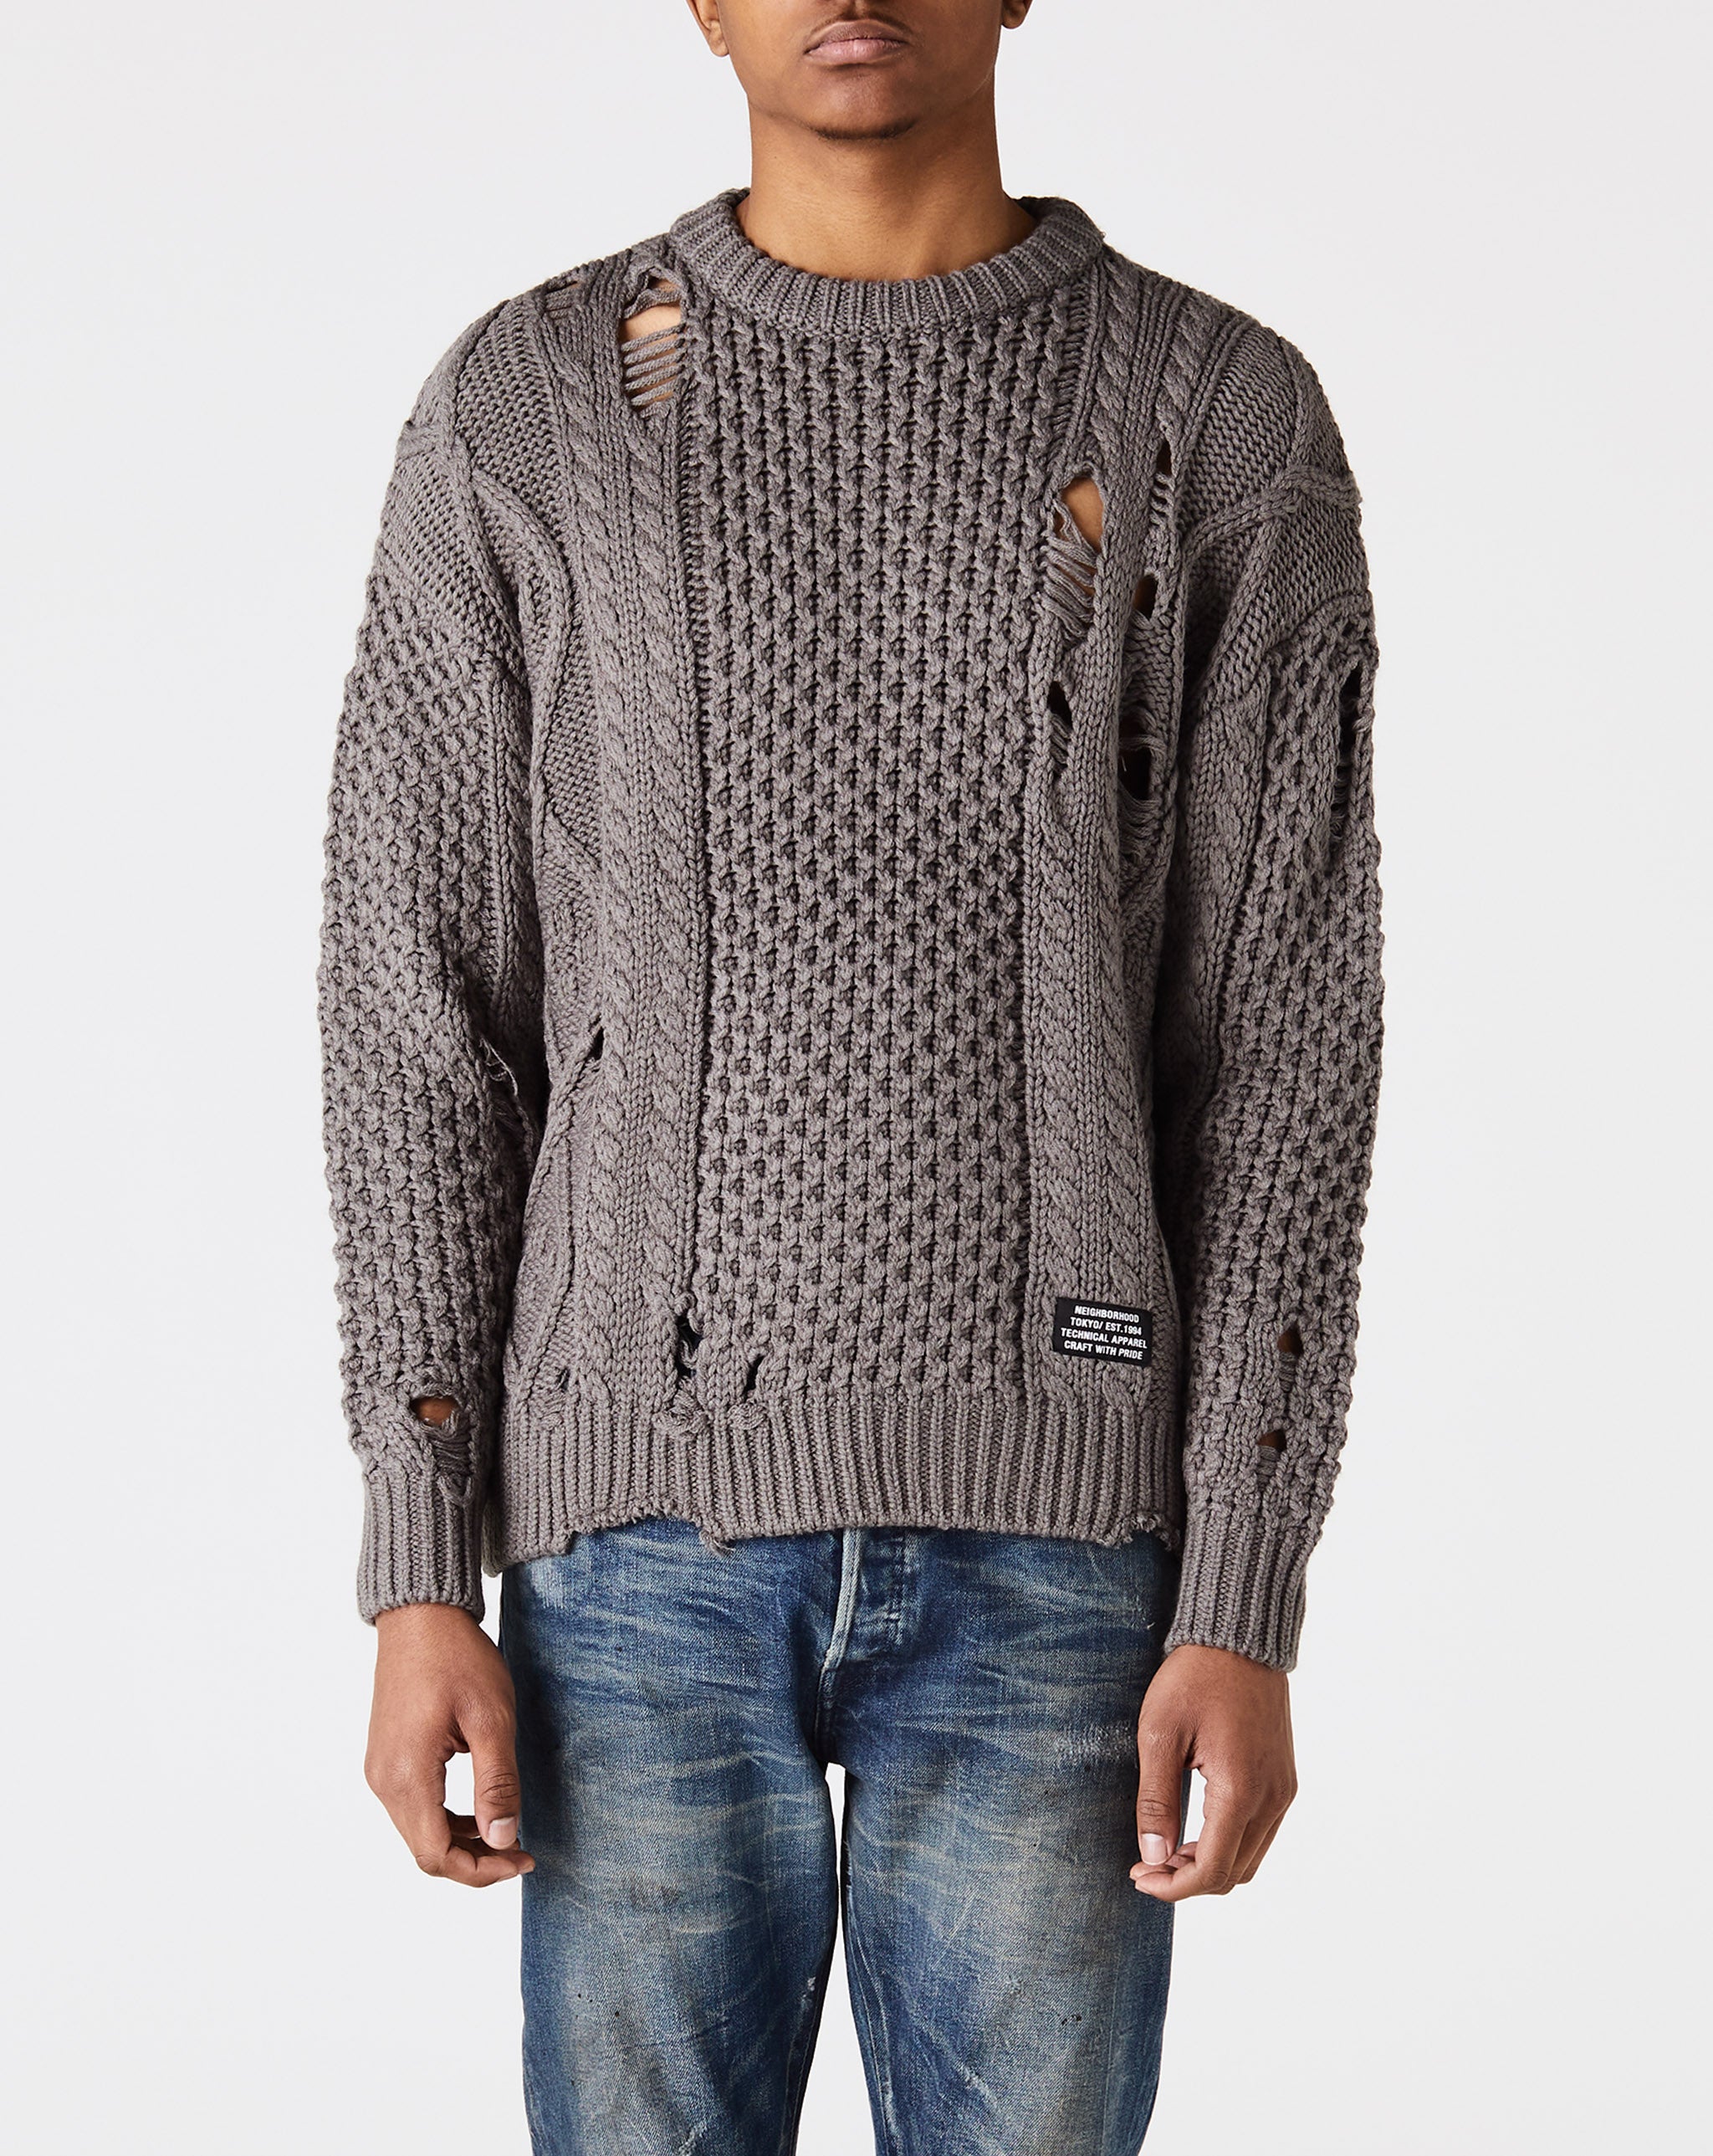 neighborhood savage sweater グレー - ニット/セーター